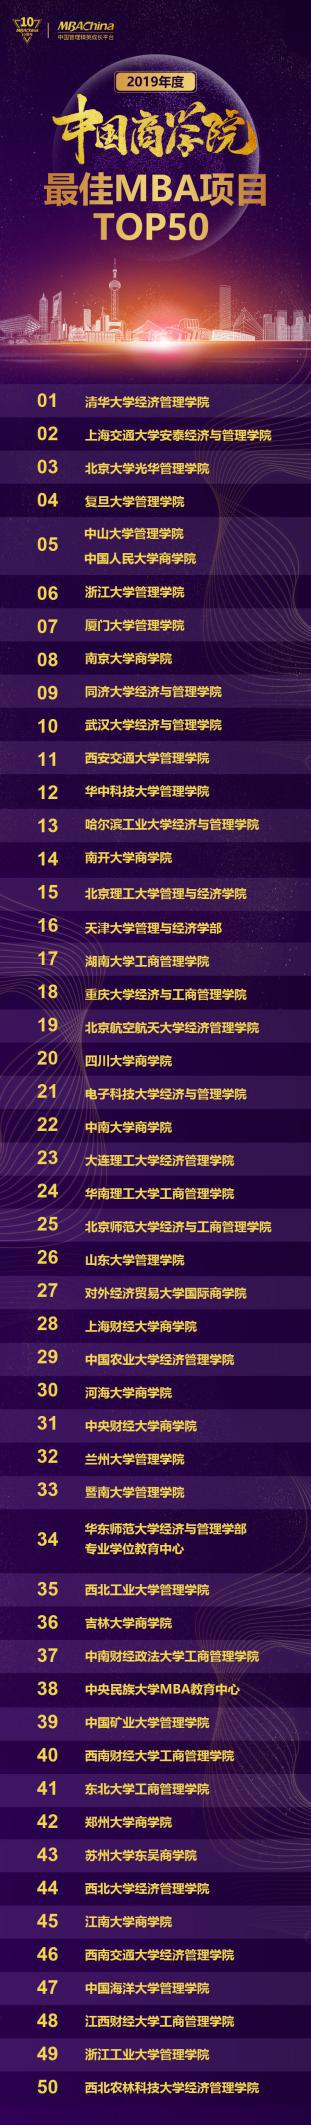 2019年度top排行榜_爱点击创新院：小红书2019年度行业品牌投放TOP10榜单重